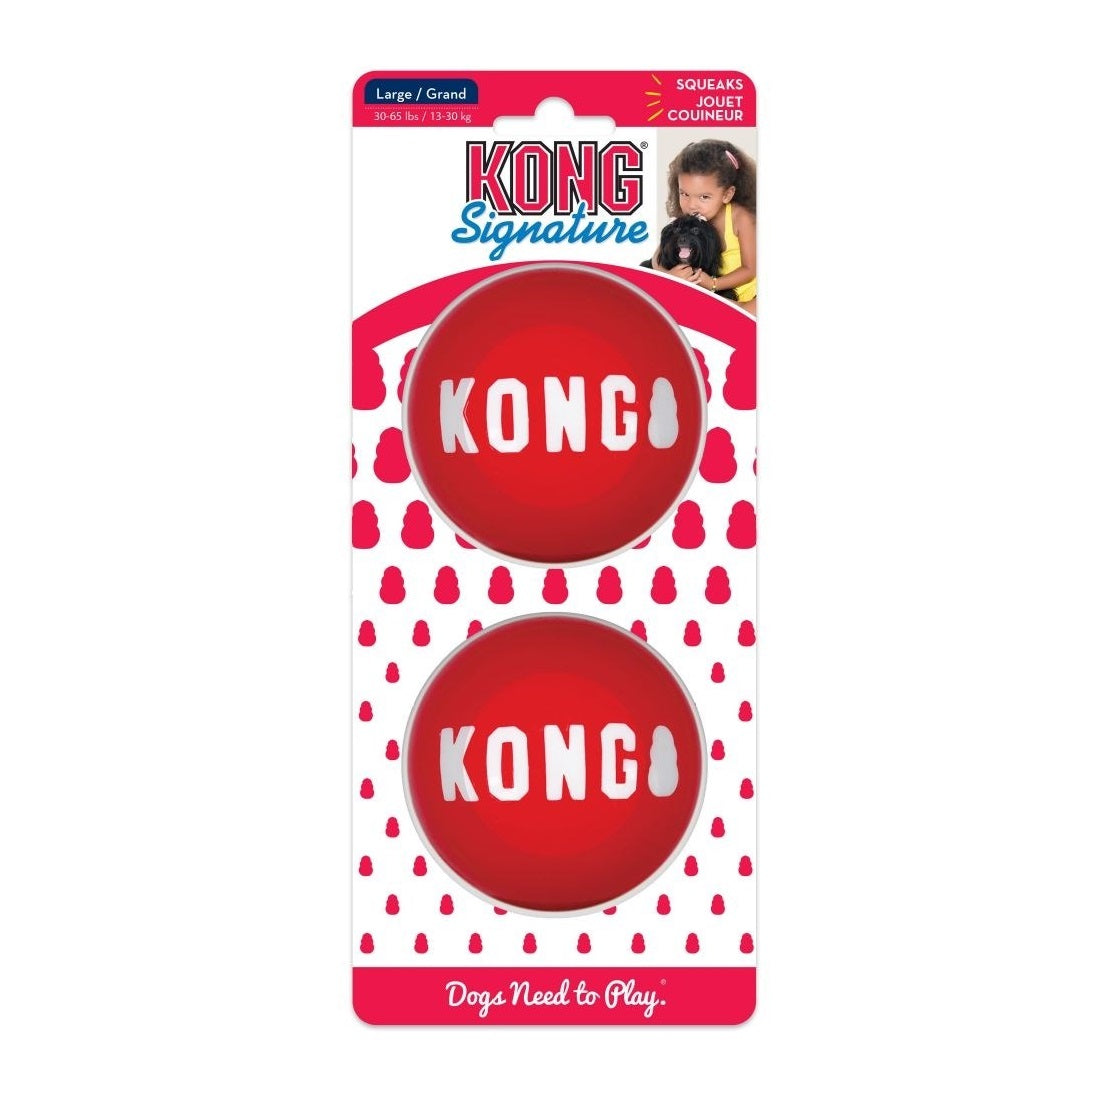 KONG Signature Balls 2pk Dog Toy